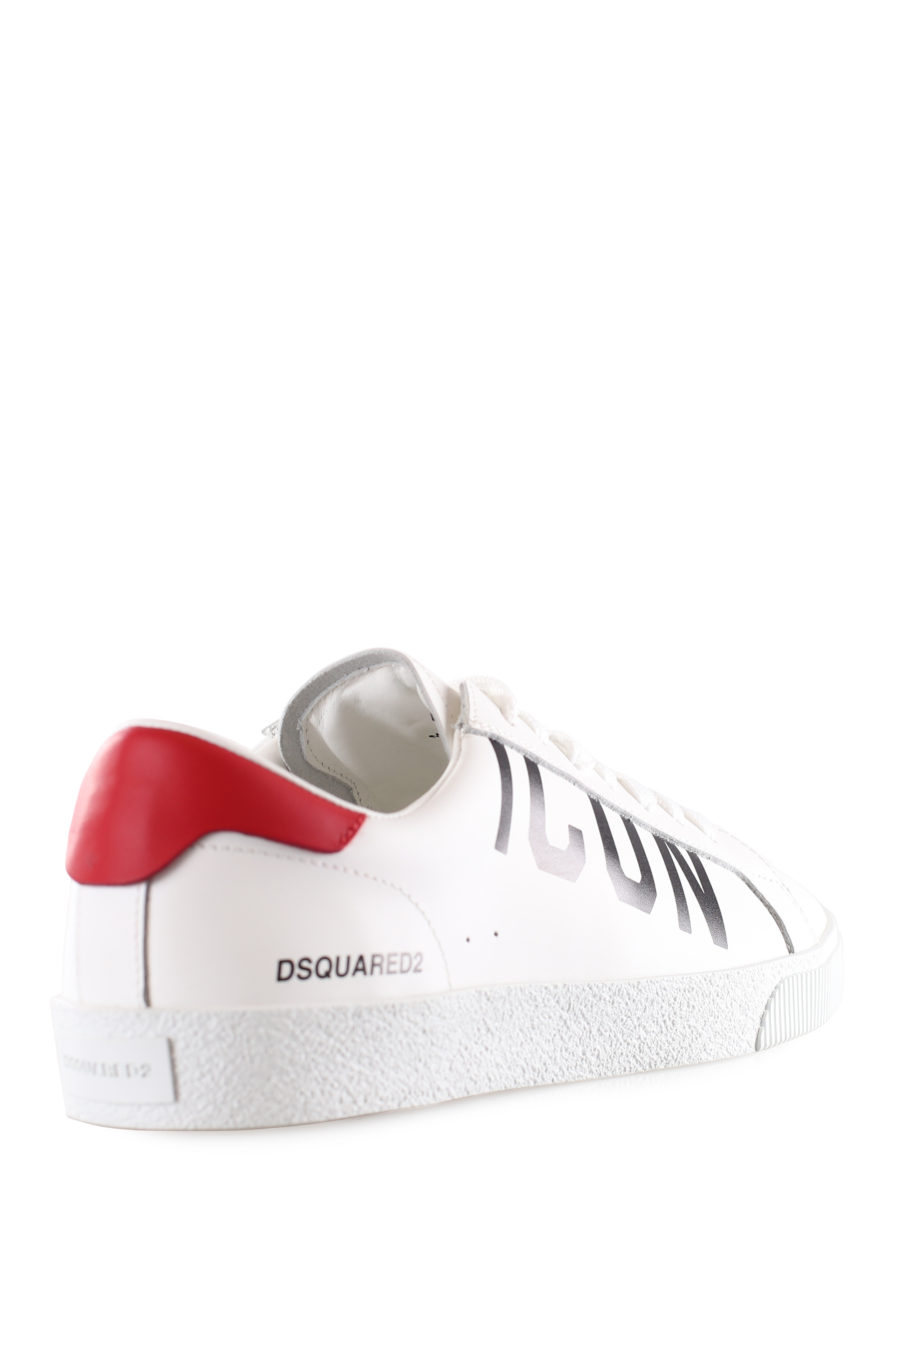 Zapatillas blancas con logo "icon" diagonal y detalle rojo - IMG 9531